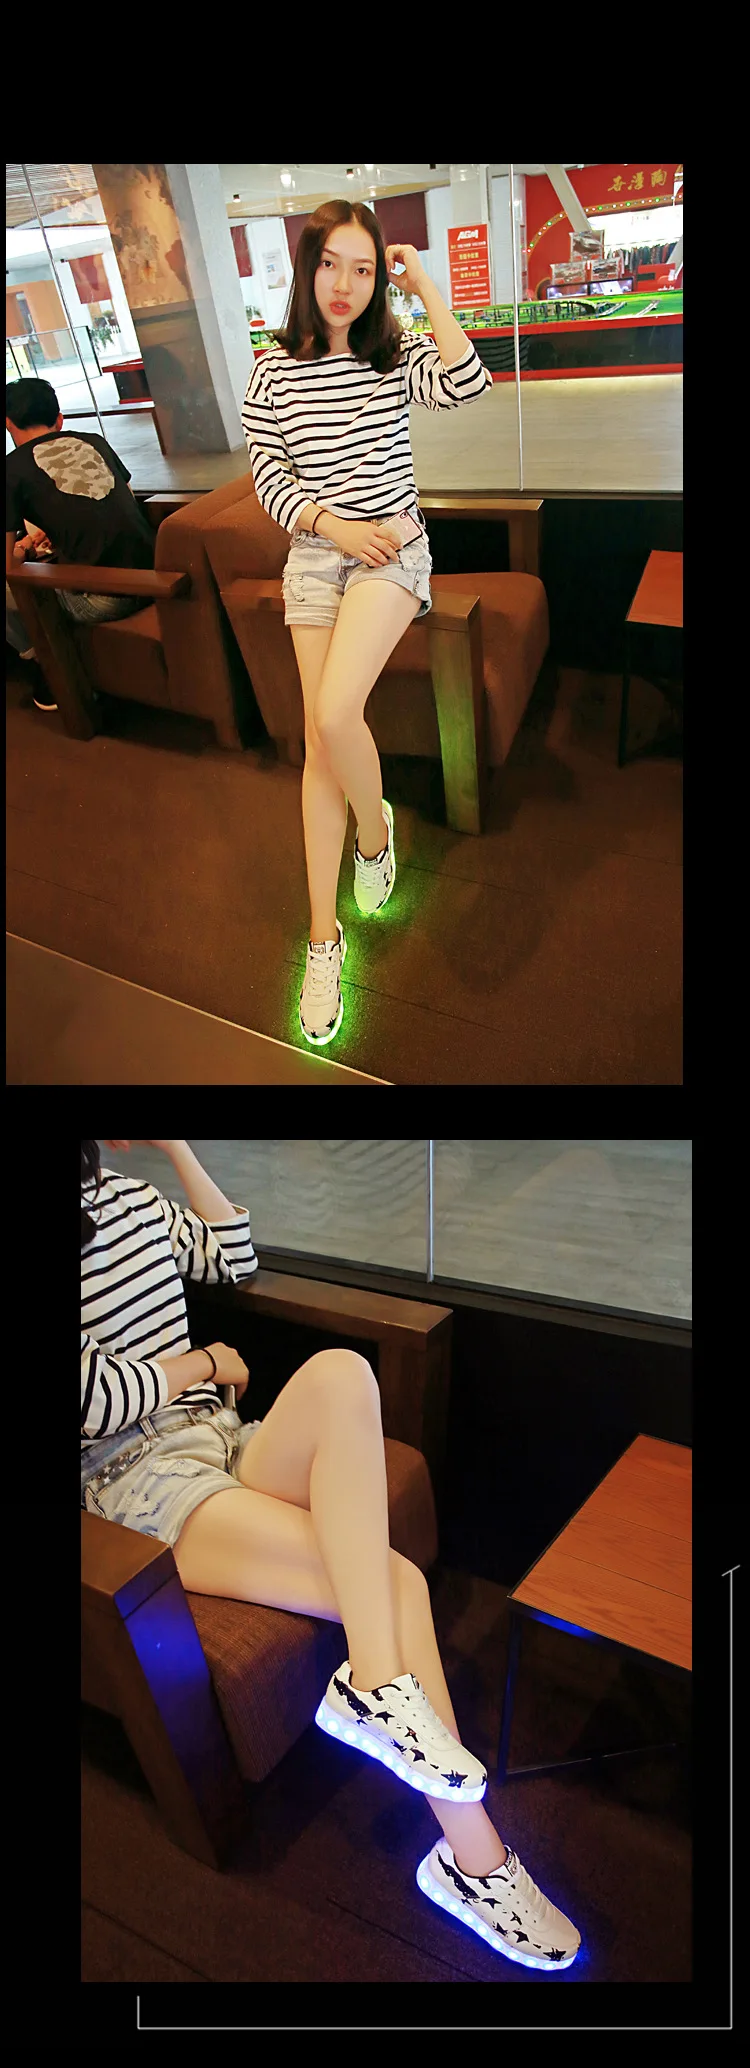 Светящаяся детская обувь со светодиодной подсветкой USB Перезаряжаемые из натуральных материалов, Schoenen Для мужчин повседневная женская обувь световой мокасины для взрослых Мужской, женский, для пар обуви